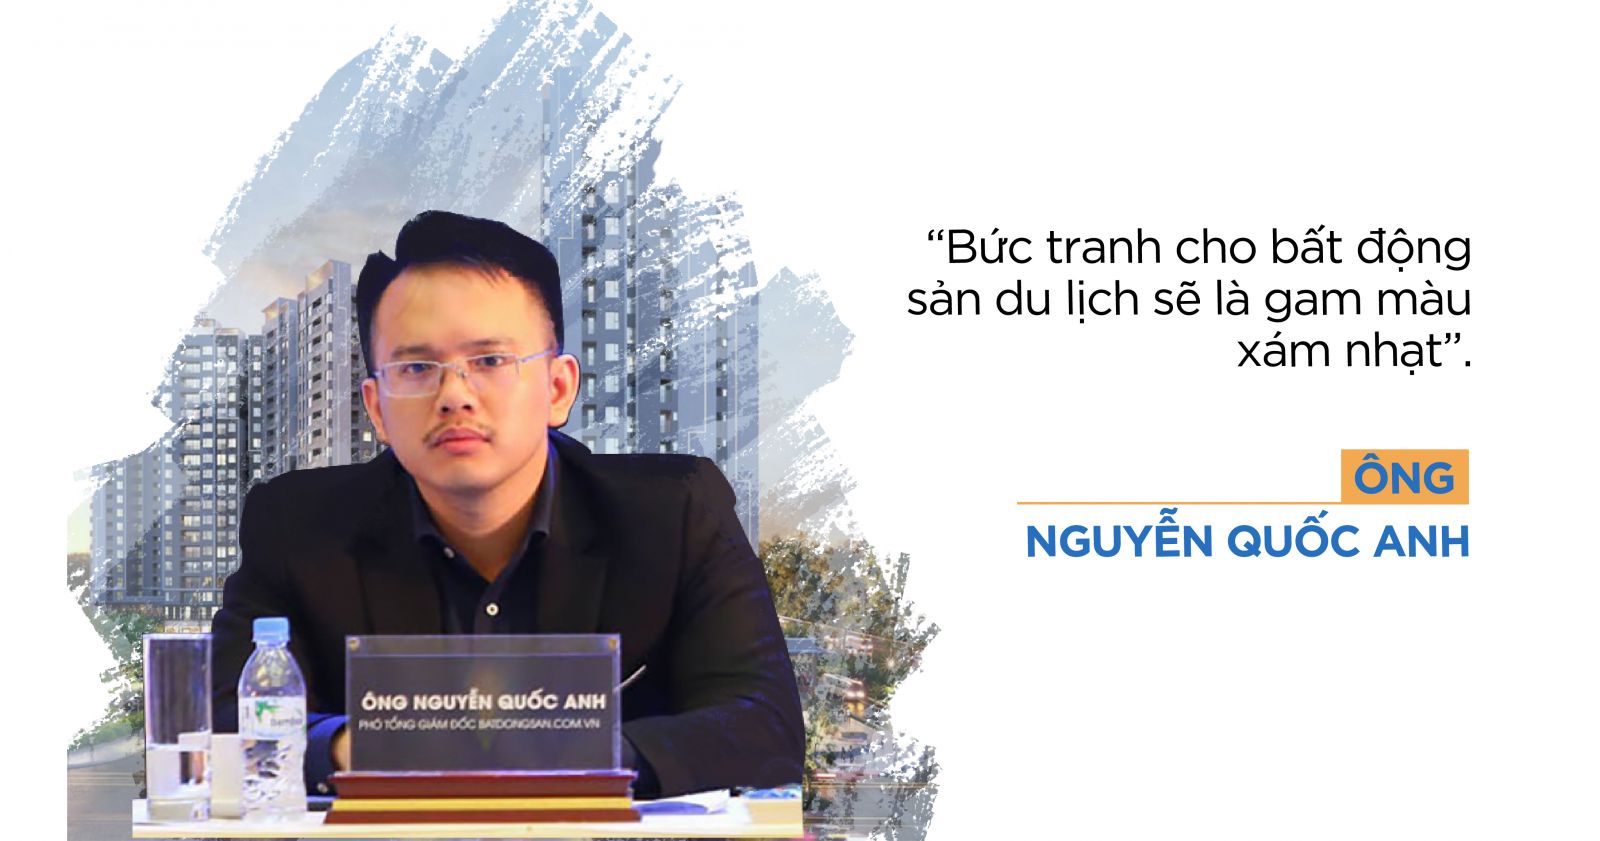 Ông Nguyễn Quốc Anh, Phó Tổng Giám đốc Batdongsan.com.vn